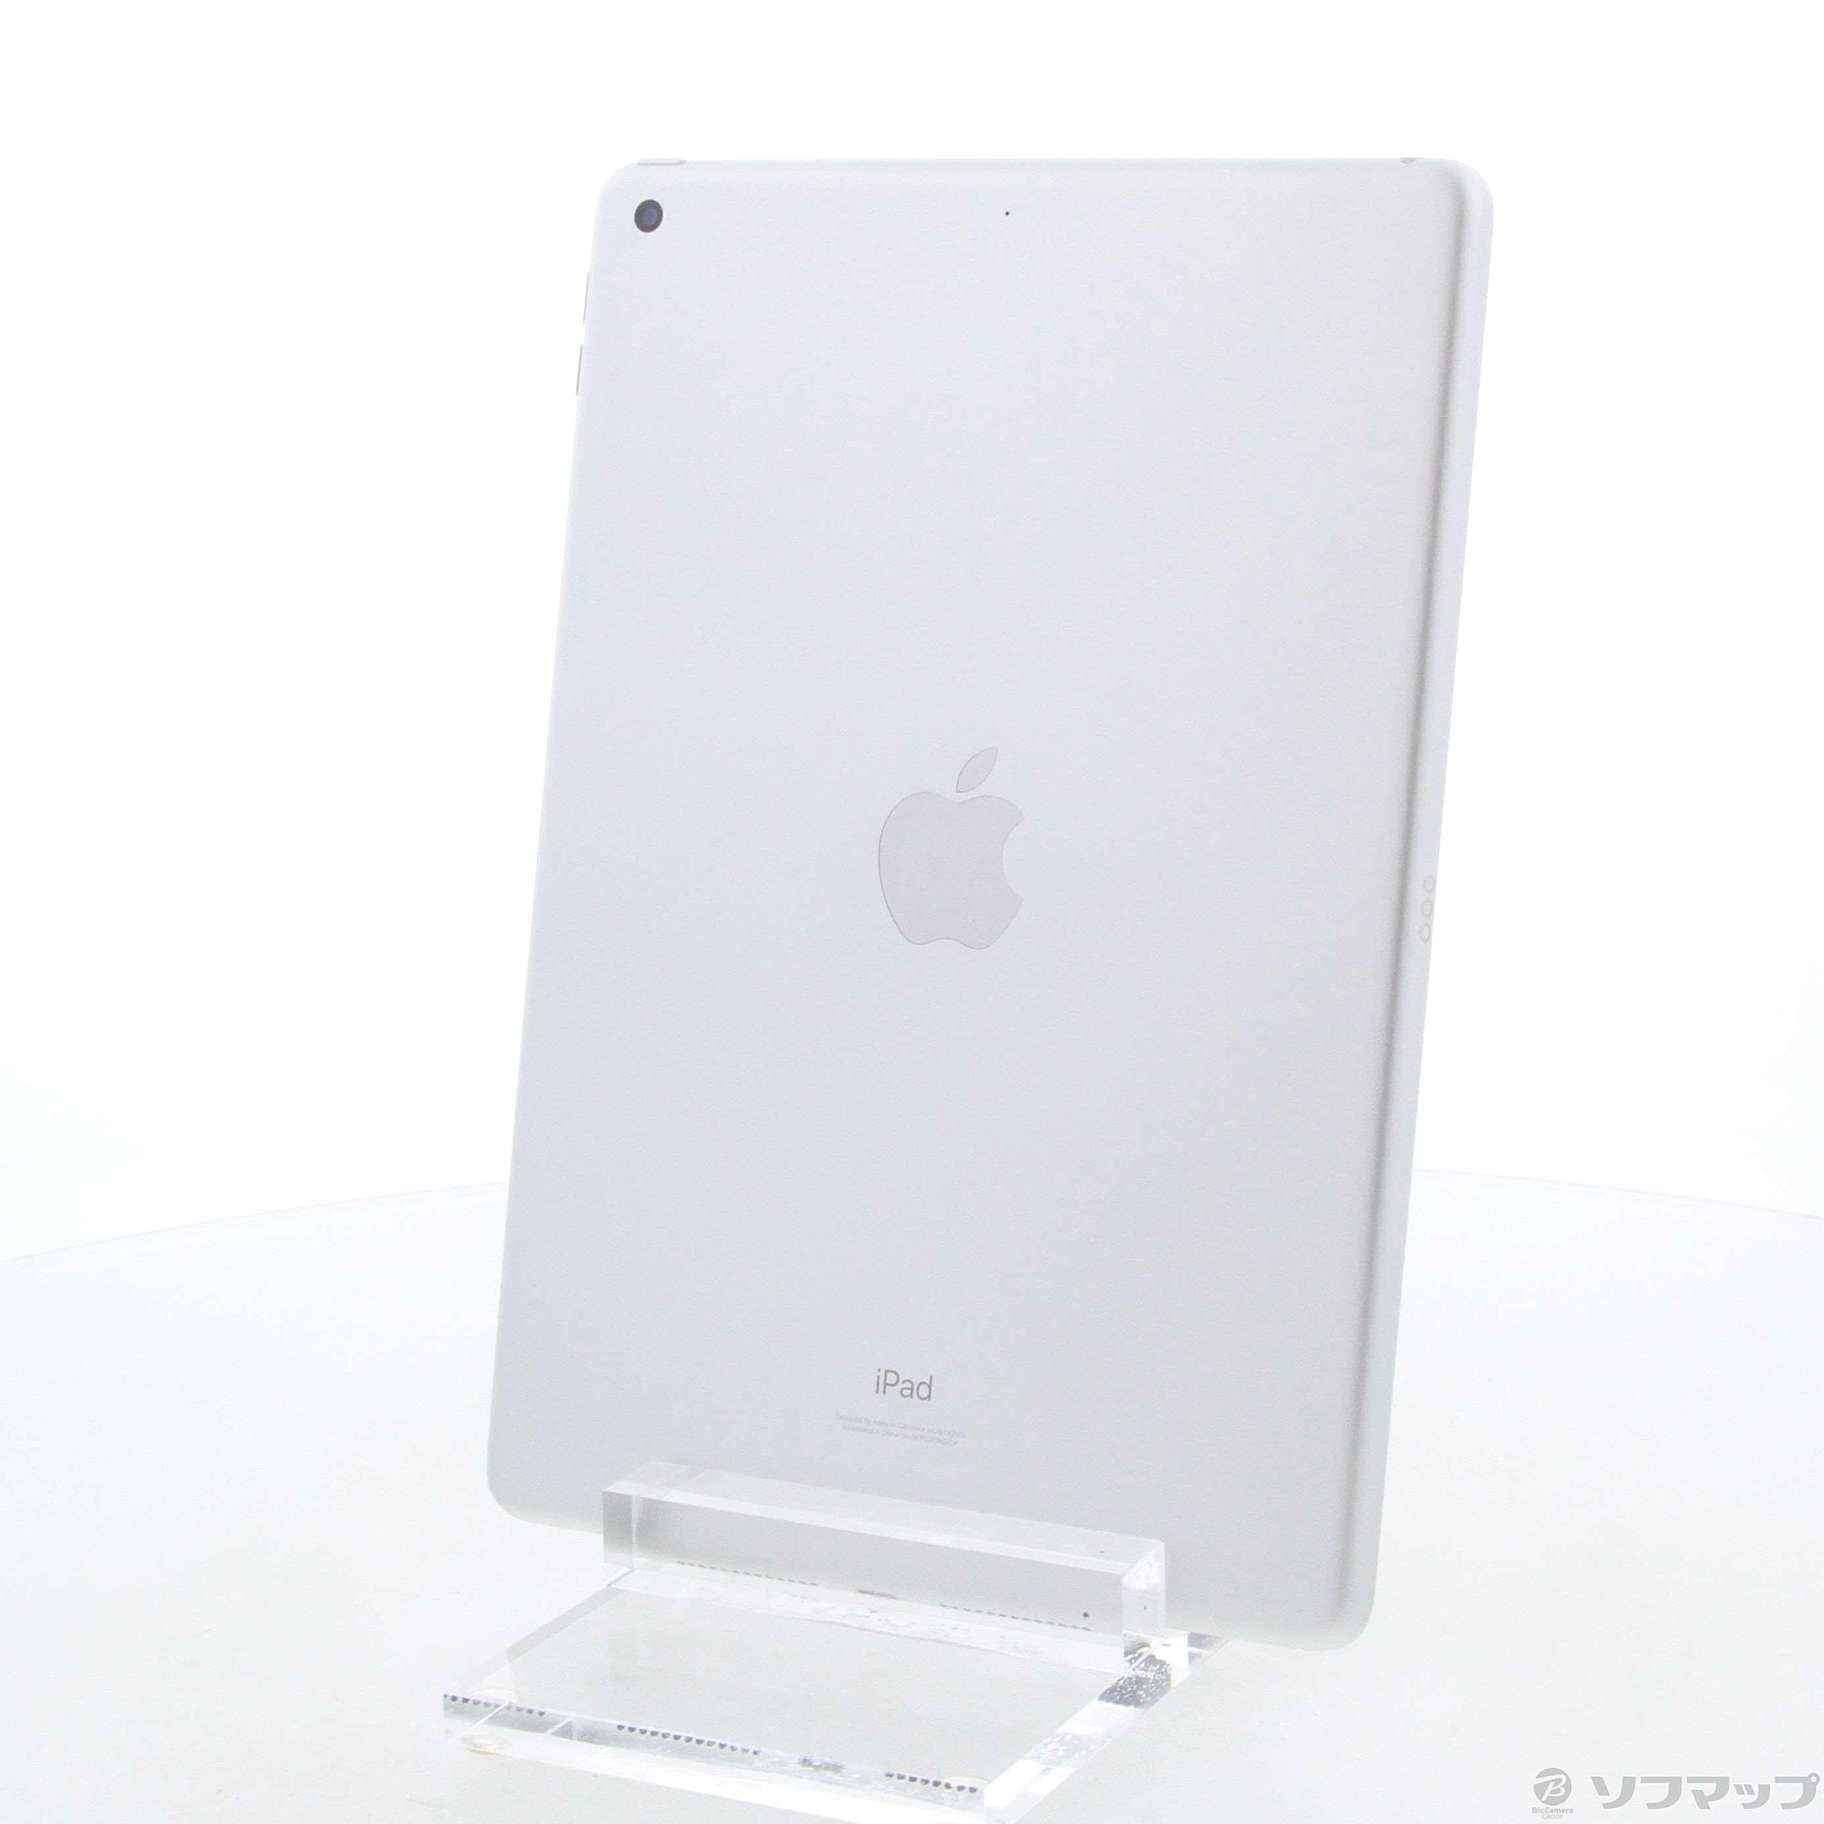 通販の公式  MK2L3J/A シルバー 64G Wi-Fi 第9世代 iPad Apple タブレット